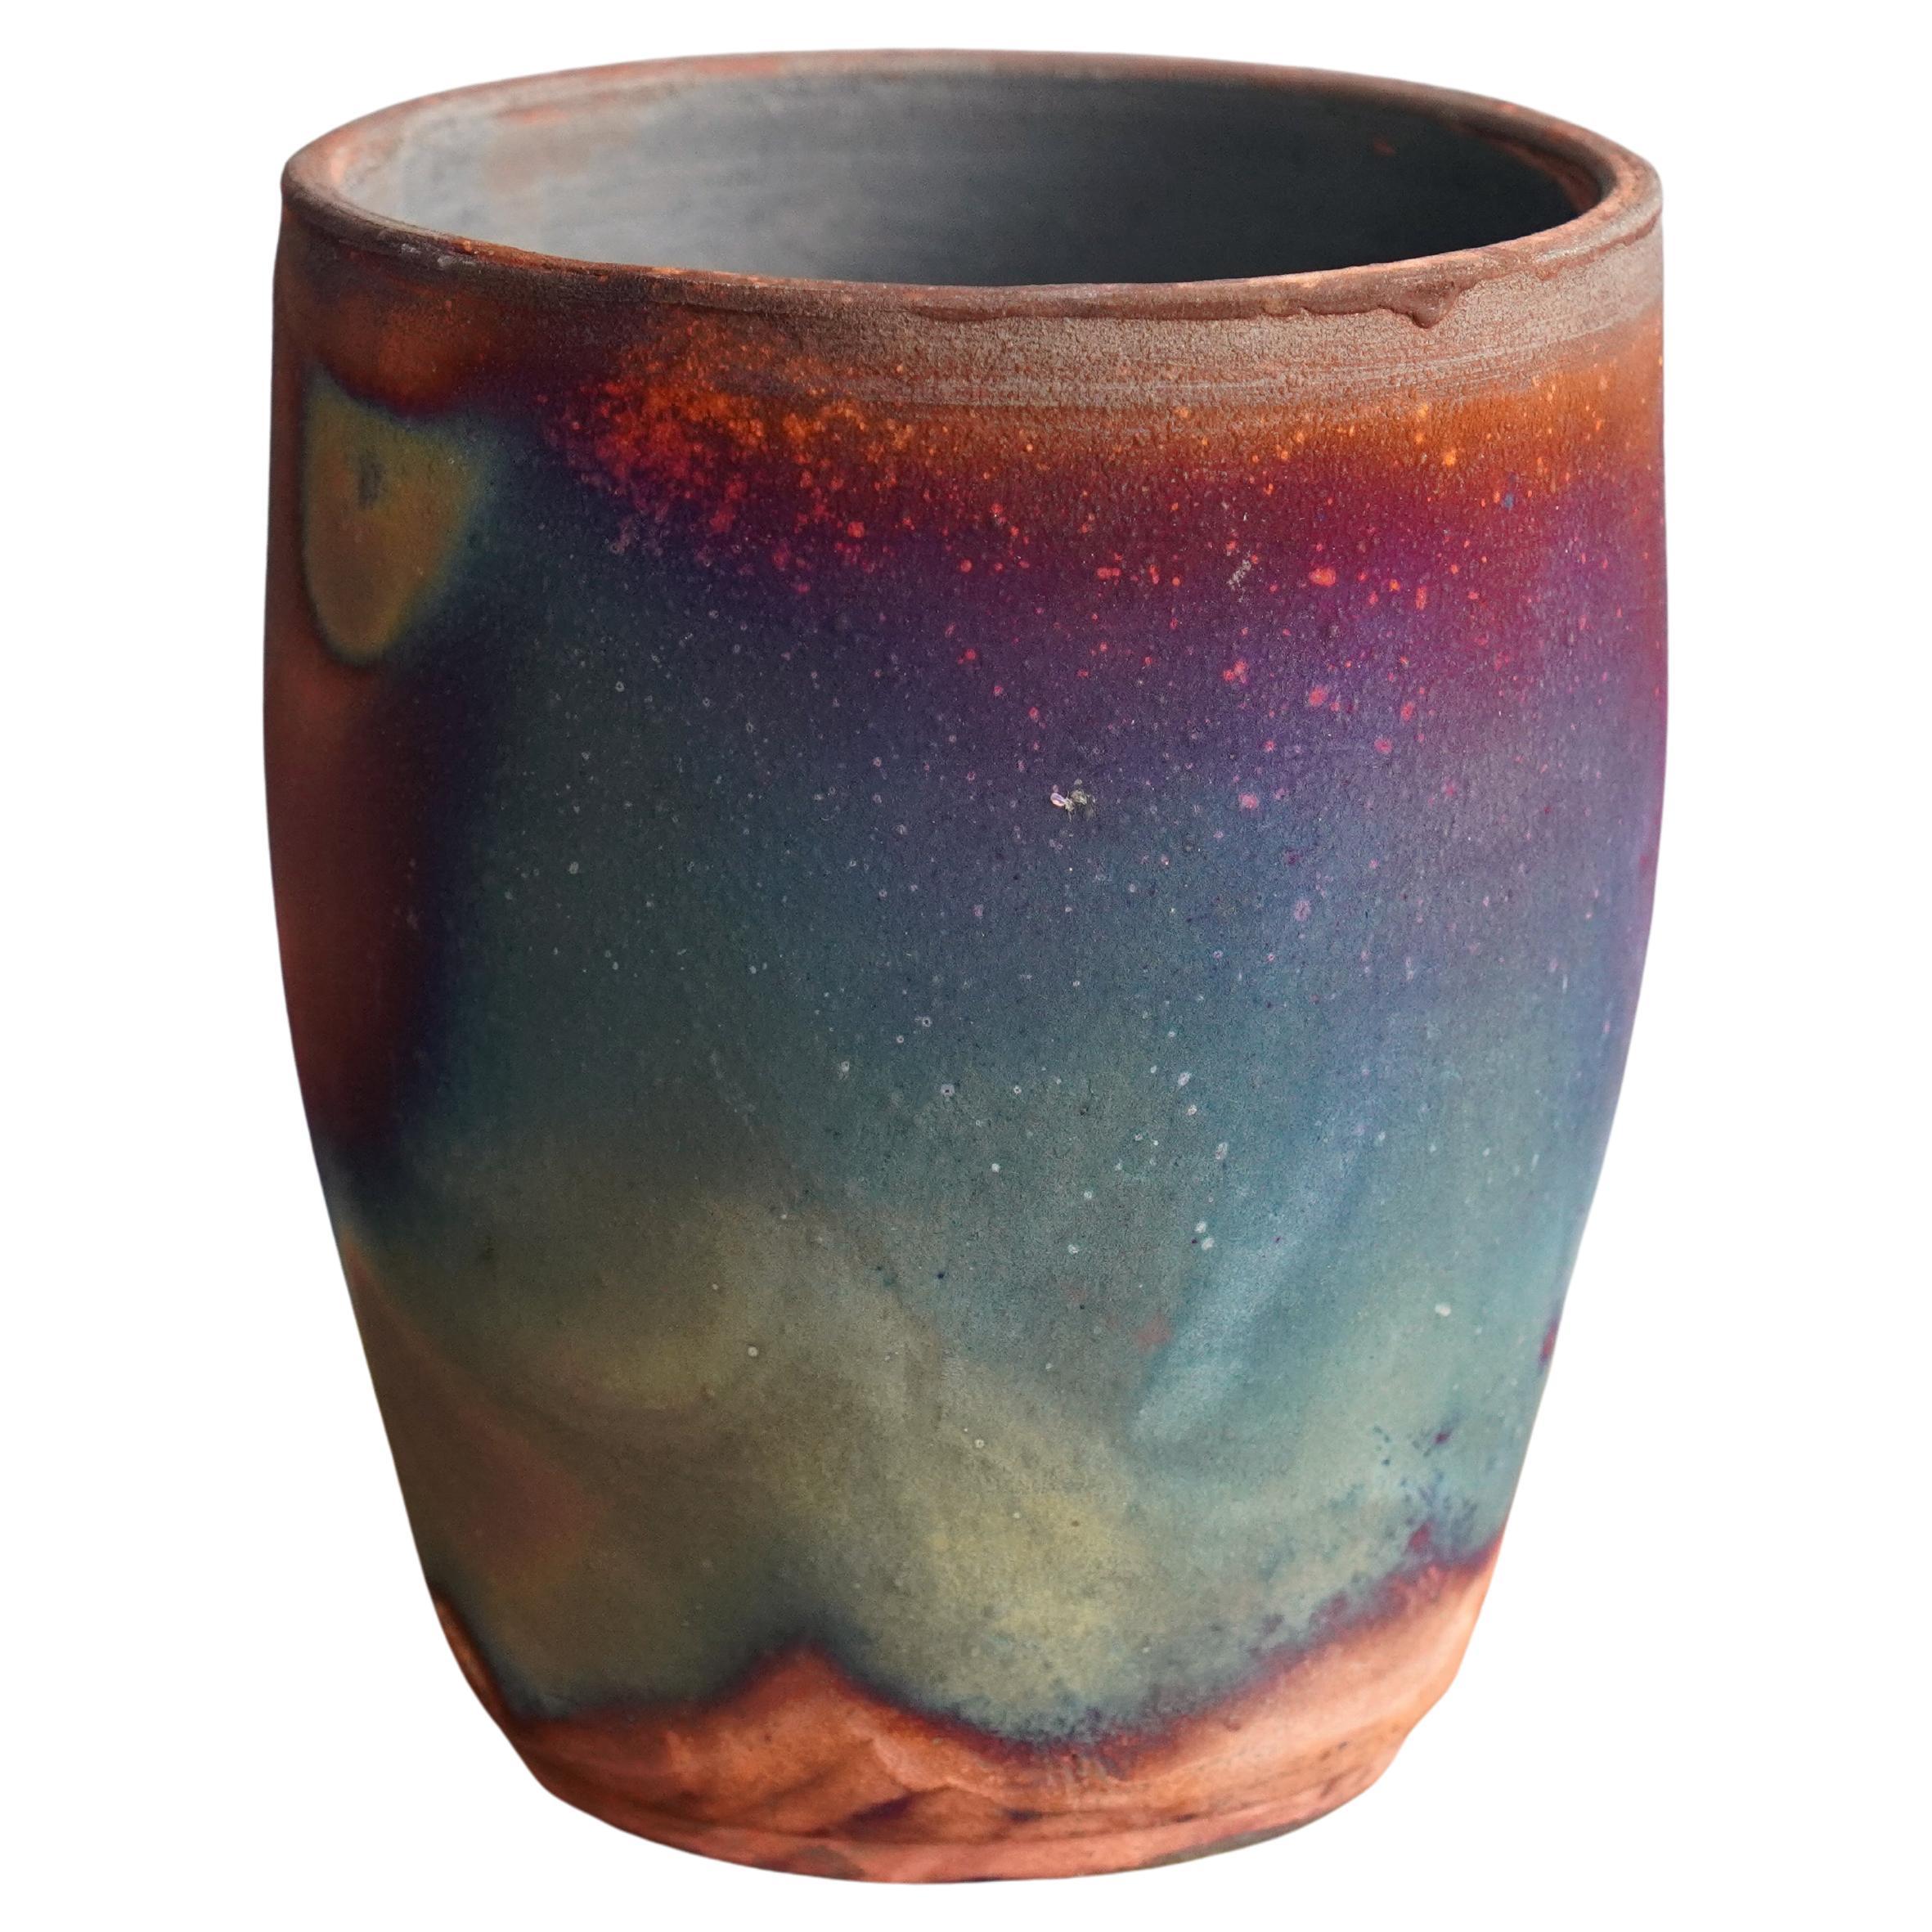 Shinsen Raku Pottery Vase, Full Copper Matte, Handmade Ceramic Home Decor Gift For Sale